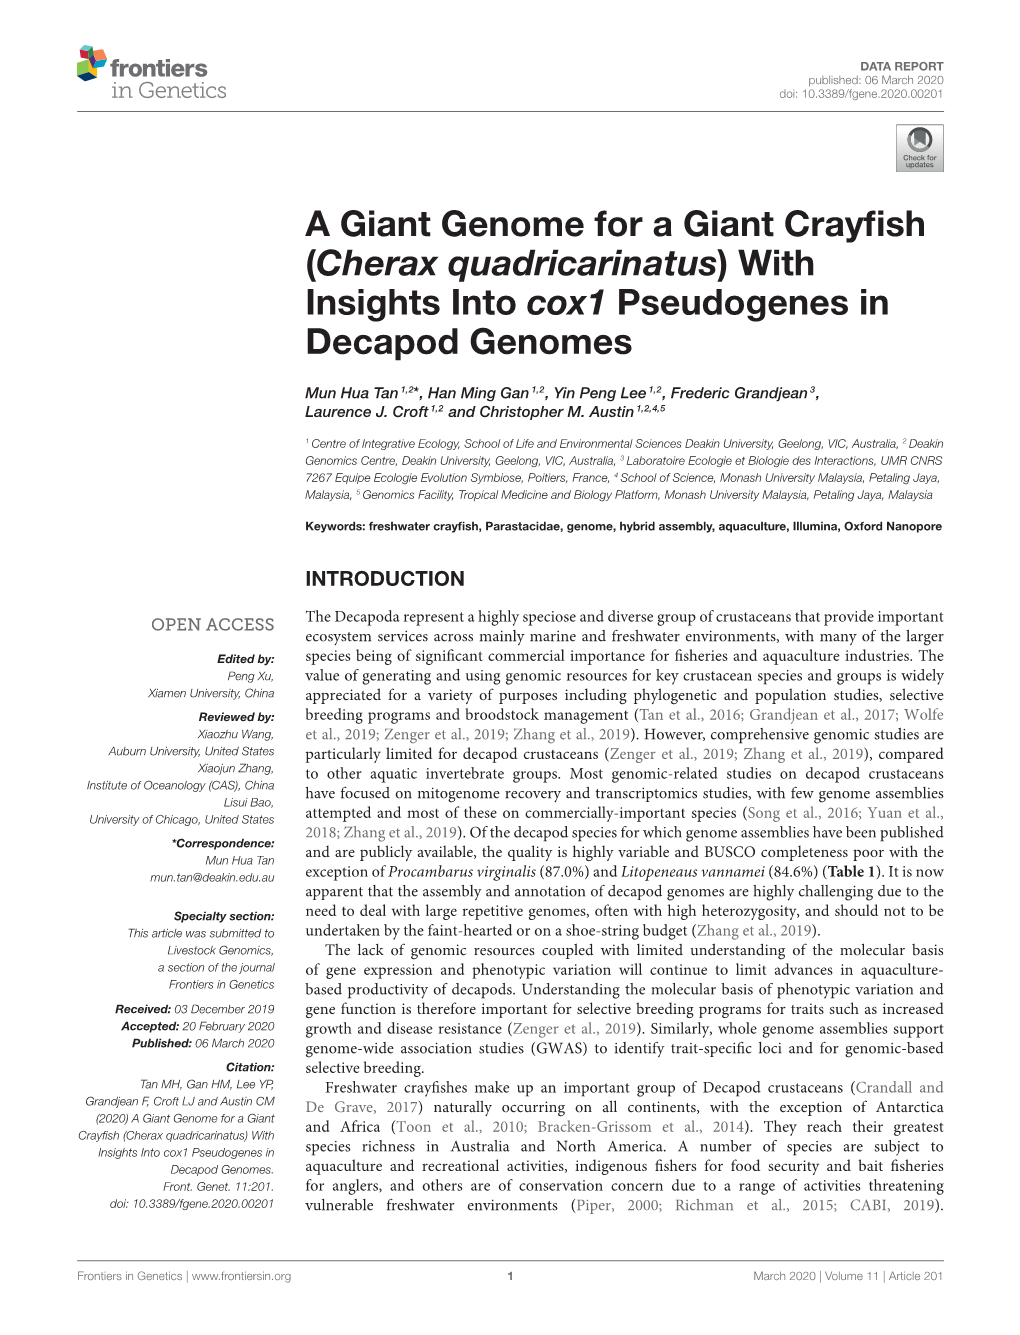 Cherax Quadricarinatus) with Insights Into Cox1 Pseudogenes in Decapod Genomes